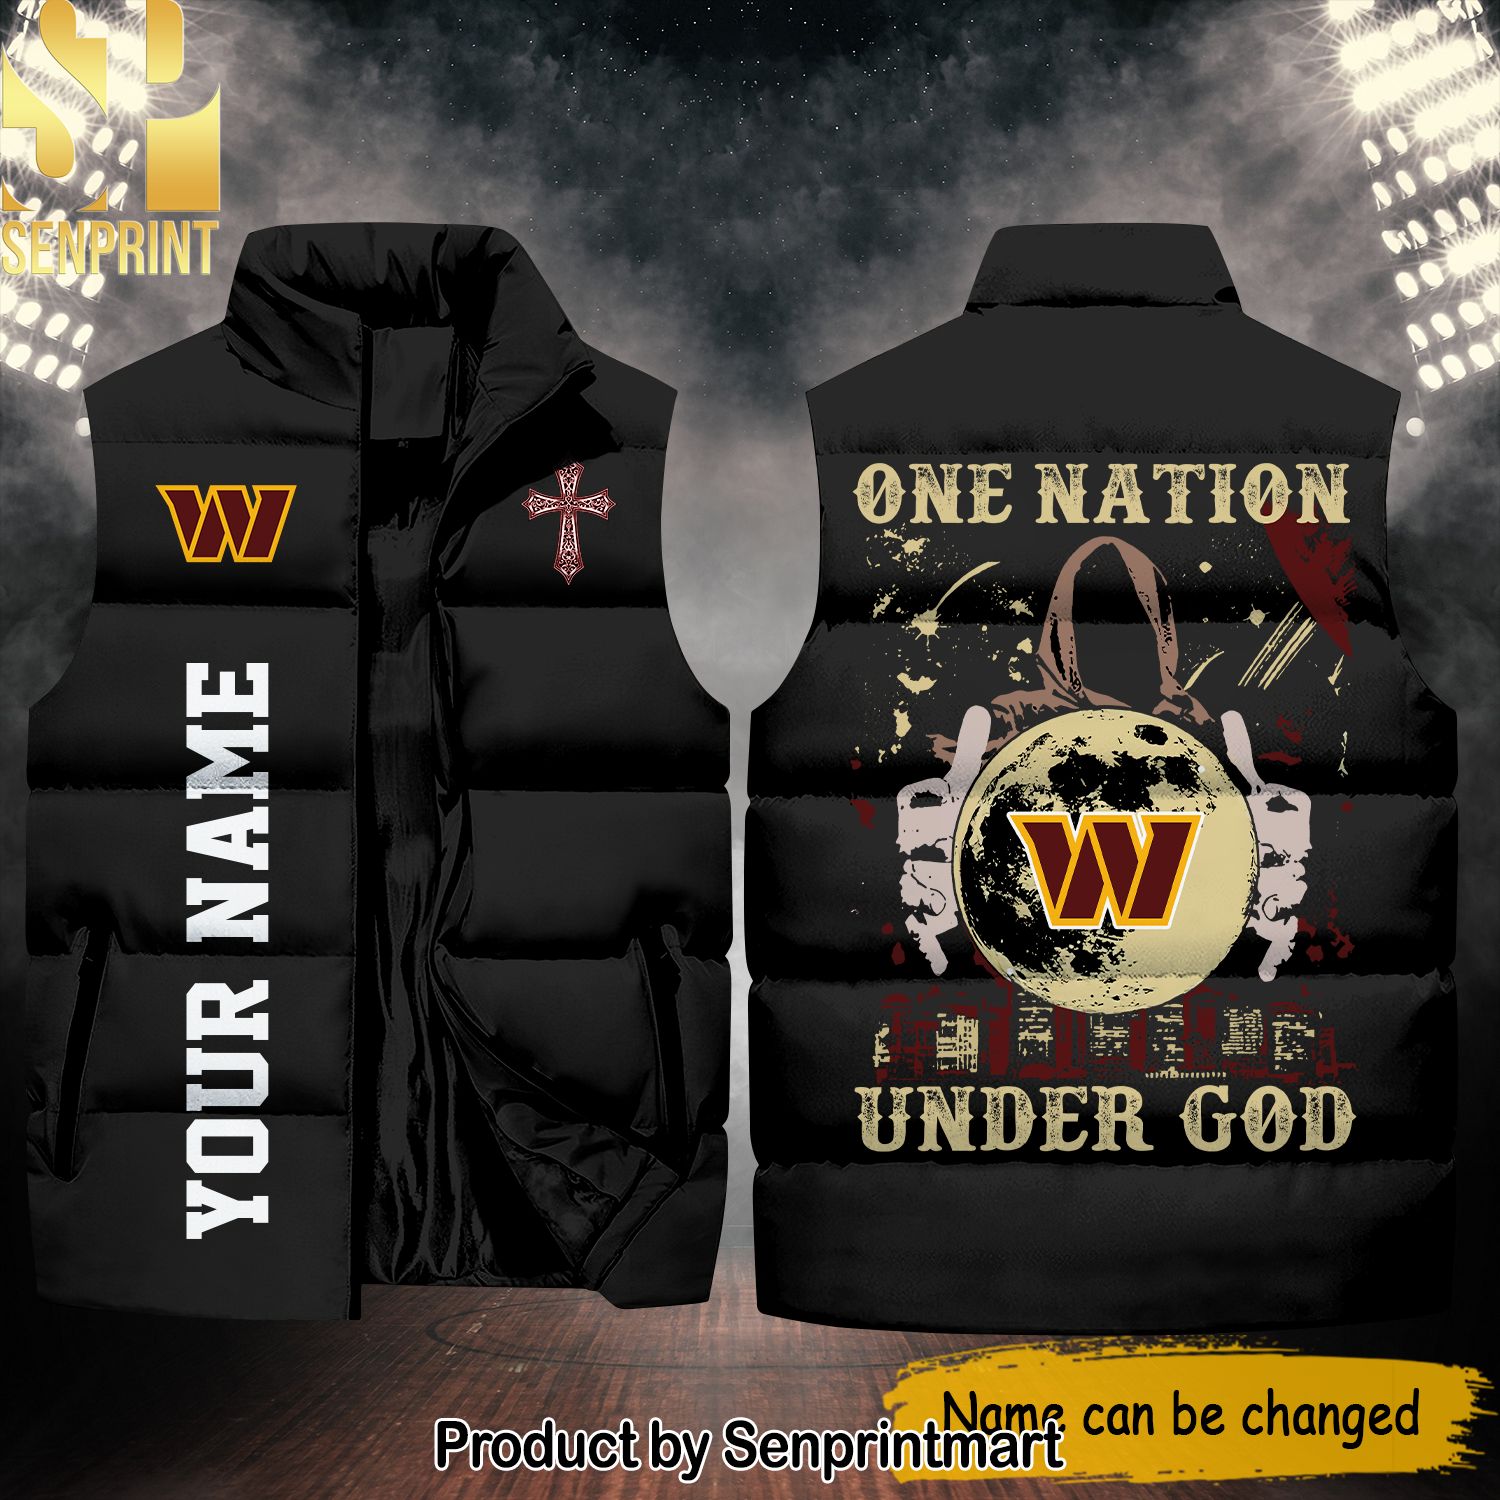 National Football League Washington Commanders One Nation Under God New Style Sleeveless Jacket